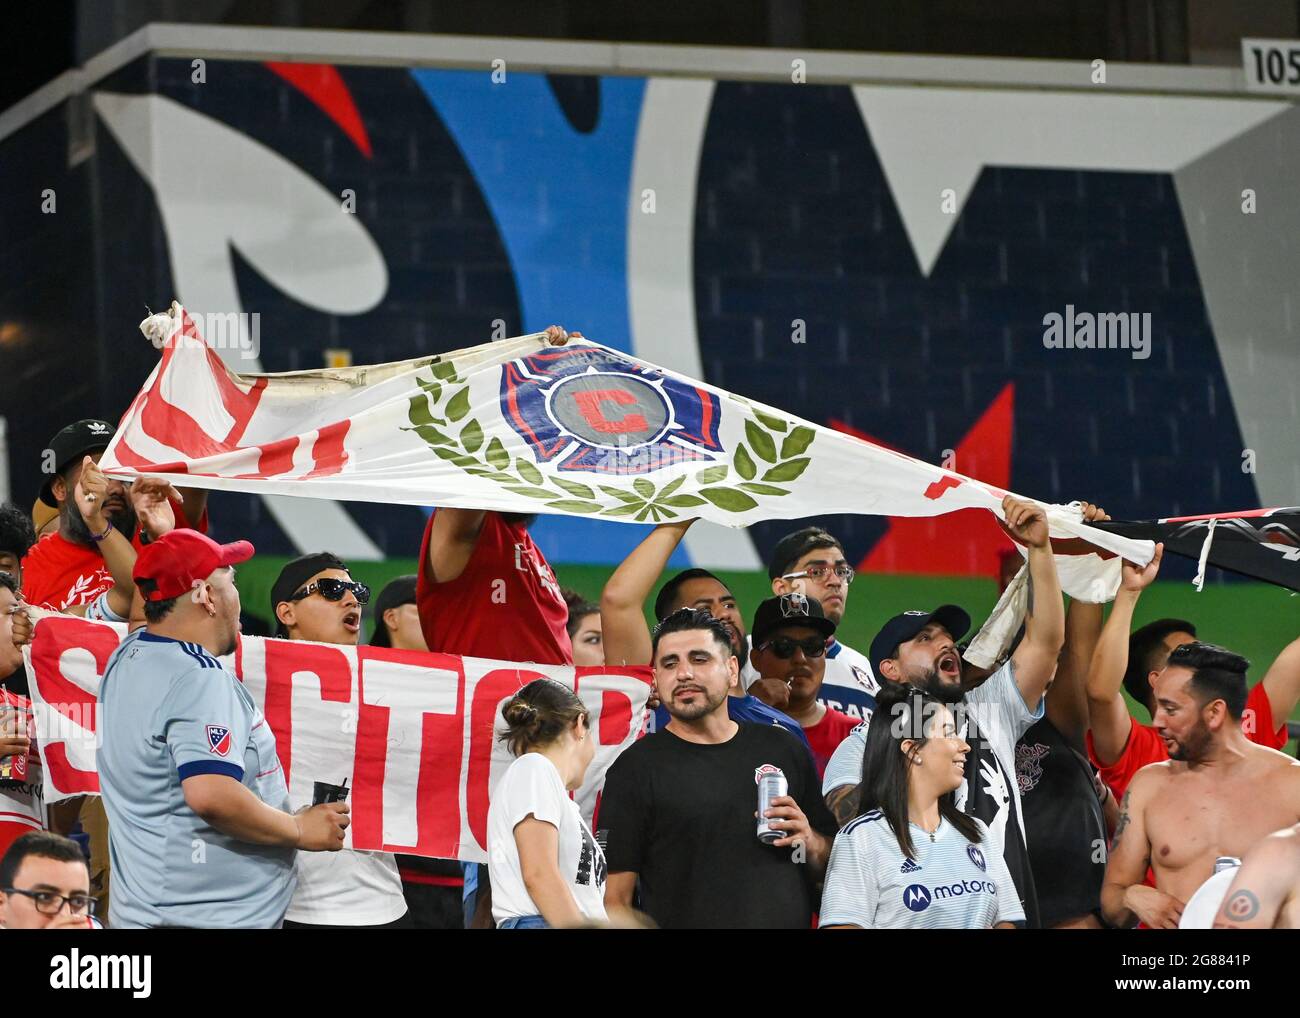 Nashville, Tennessee, États-Unis. 17 juillet 2021. Les fans de Chicago Fire brandirent un drapeau pour soutenir leur équipe lors du match MLS entre le Chicago Fire et le Nashville SC au Nissan Stadium de Nashville, TN. Kevin Langley/CSM/Alamy Live News Banque D'Images